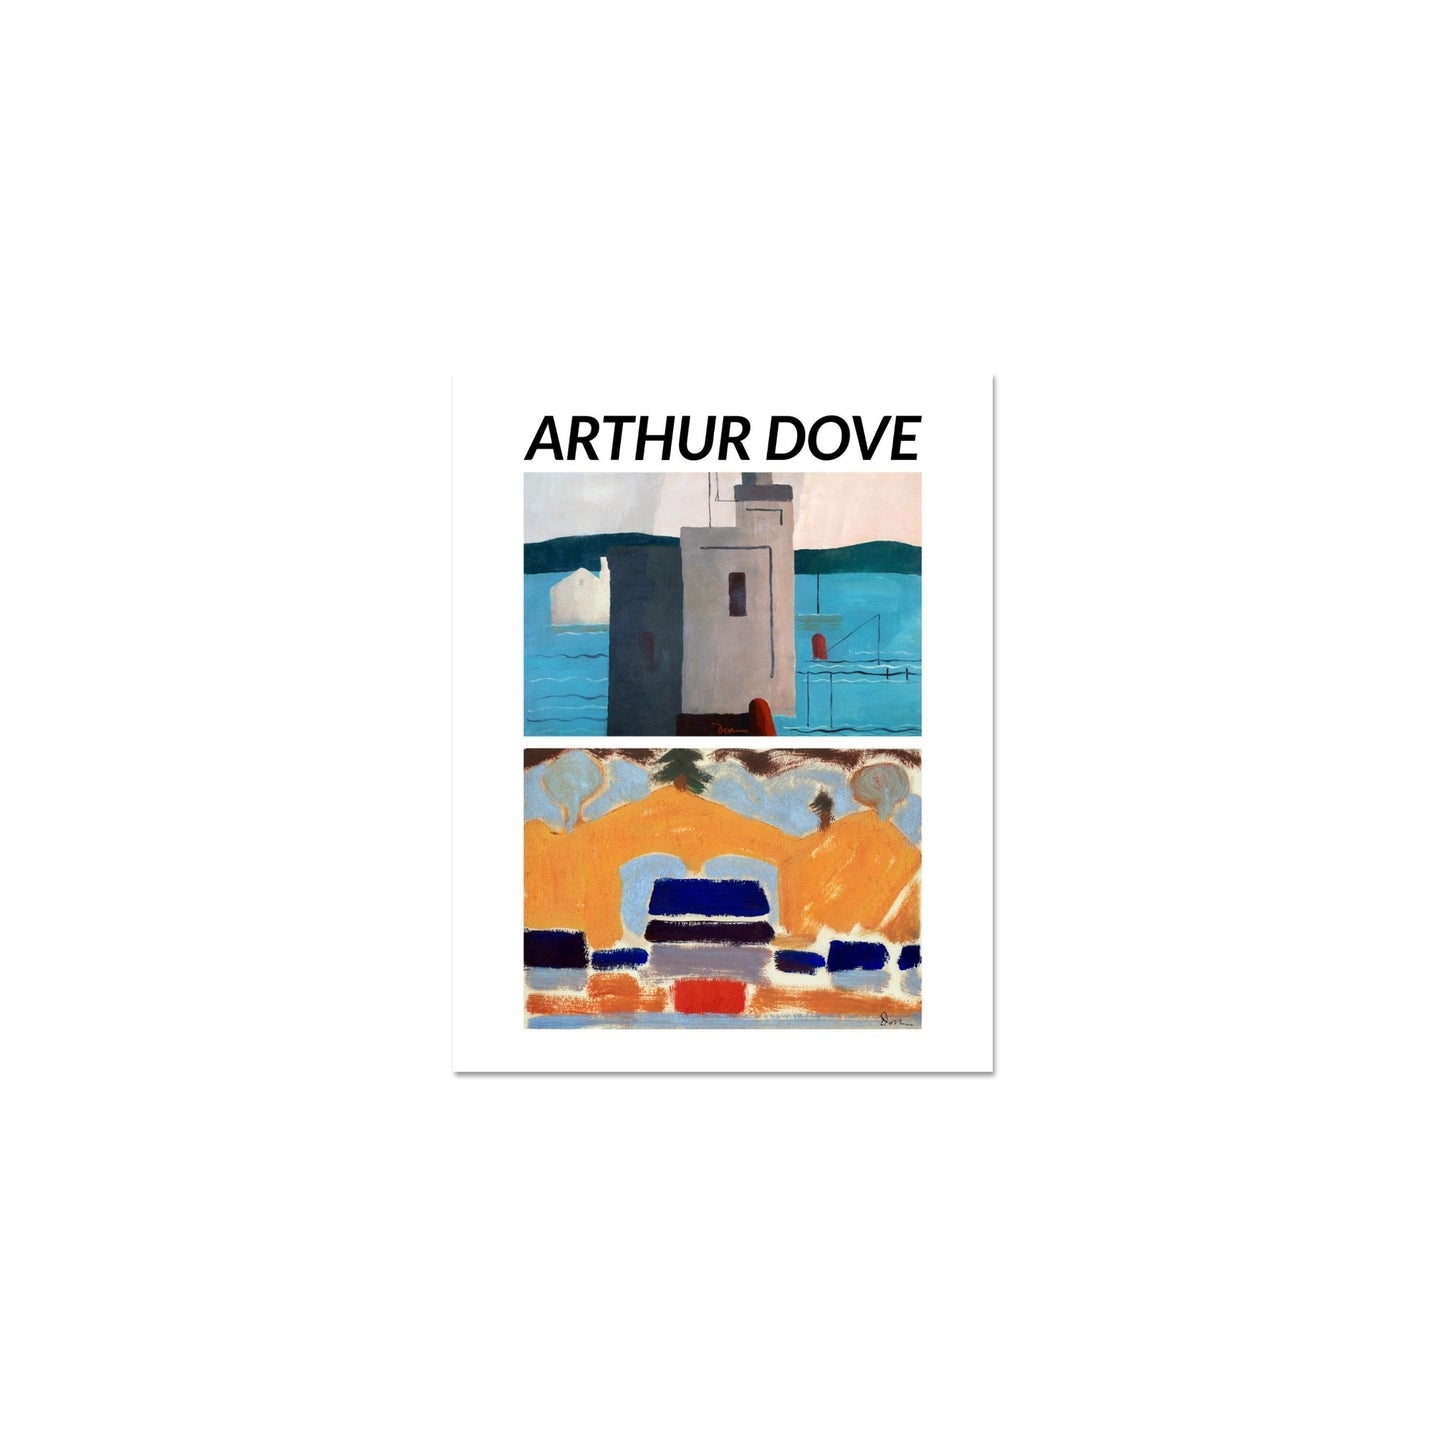 Plakat - Huse og Lloyds Havn - Arthur Dove - Vintage Modernisme Plakattryk